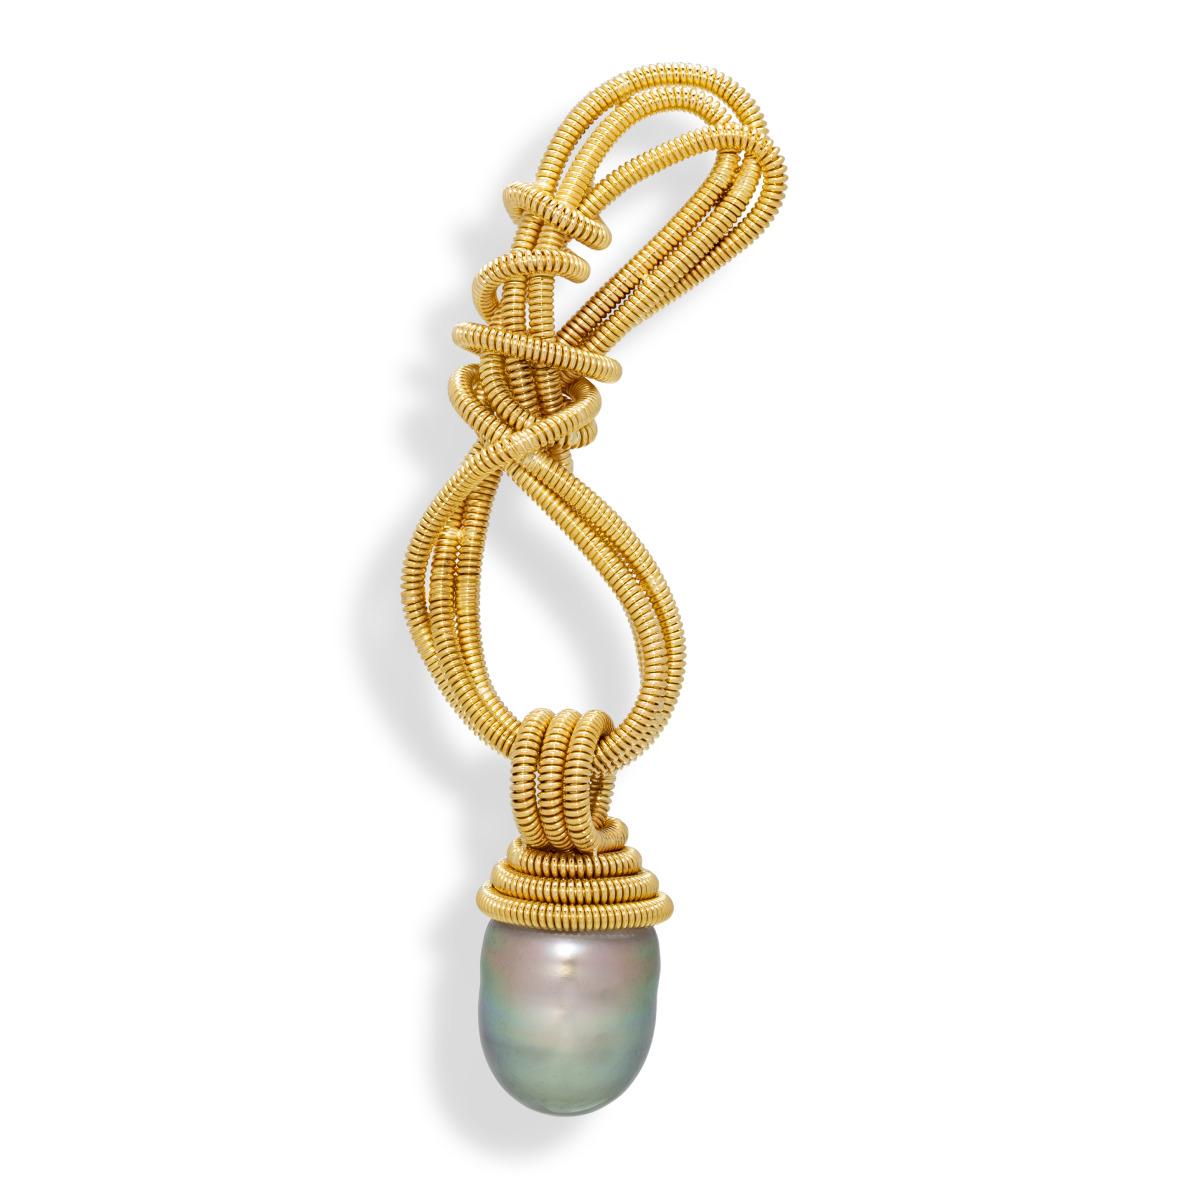 Cette magnifique broche met en valeur le travail en spirale de Gloria en or jaune 18 carats, tissé en forme de huit et couronné d'une superbe perle de Tahiti pour l'effet. Cette broche peut être portée sur la longueur ou la largeur pour s'adapter à